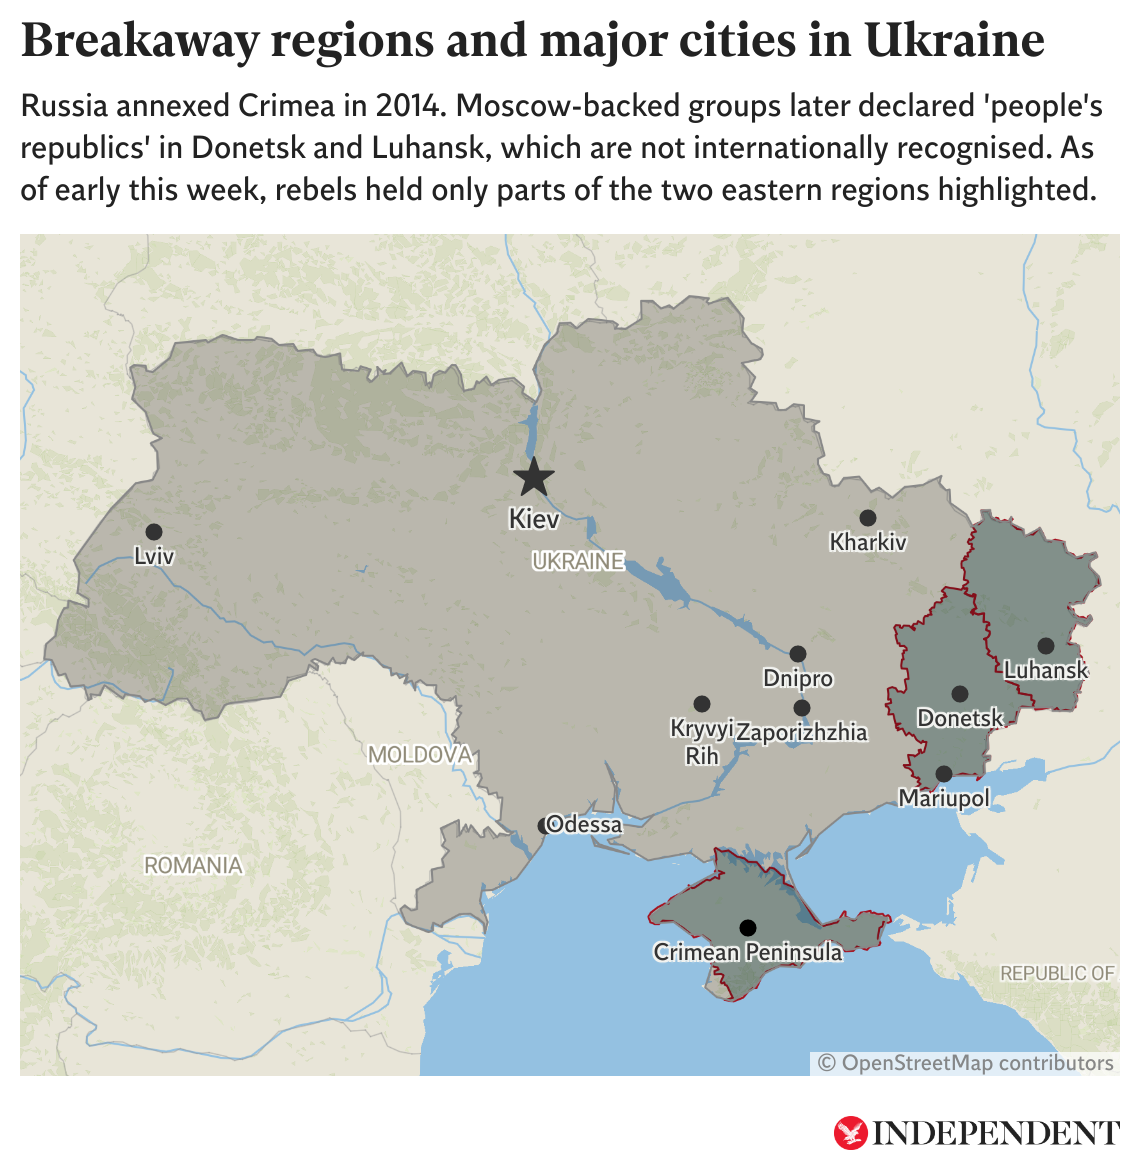 Este mapa muestra las principales ciudades de Ucrania, así como las regiones separatistas respaldadas por Moscú. A principios de esta semana, los rebeldes solo tenían en su poder partes de las regiones de Donetsk y Luhansk resaltadas